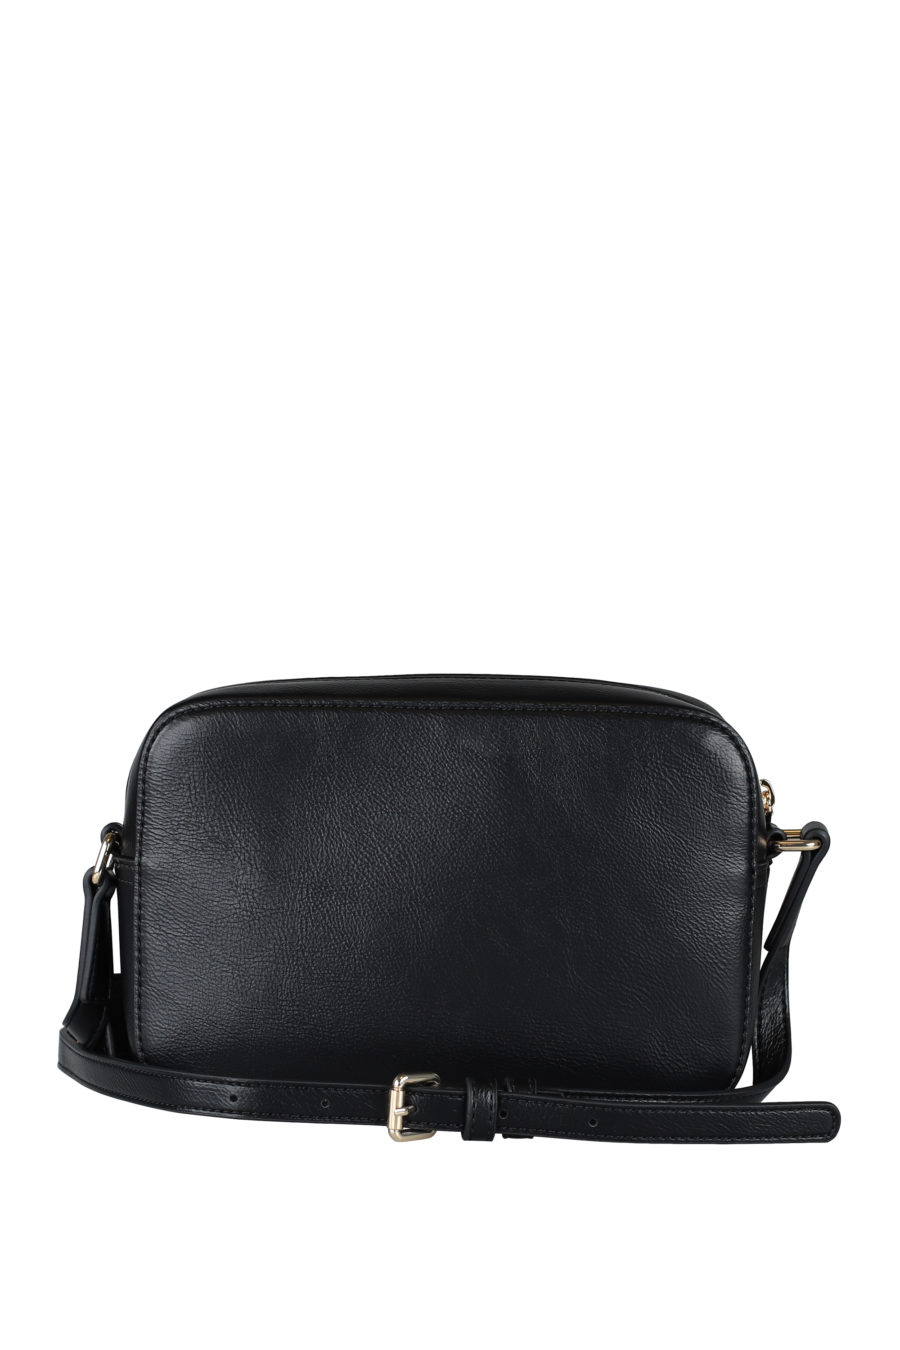 Bolso negro "camera bag" con logo bordado - IMG 1481